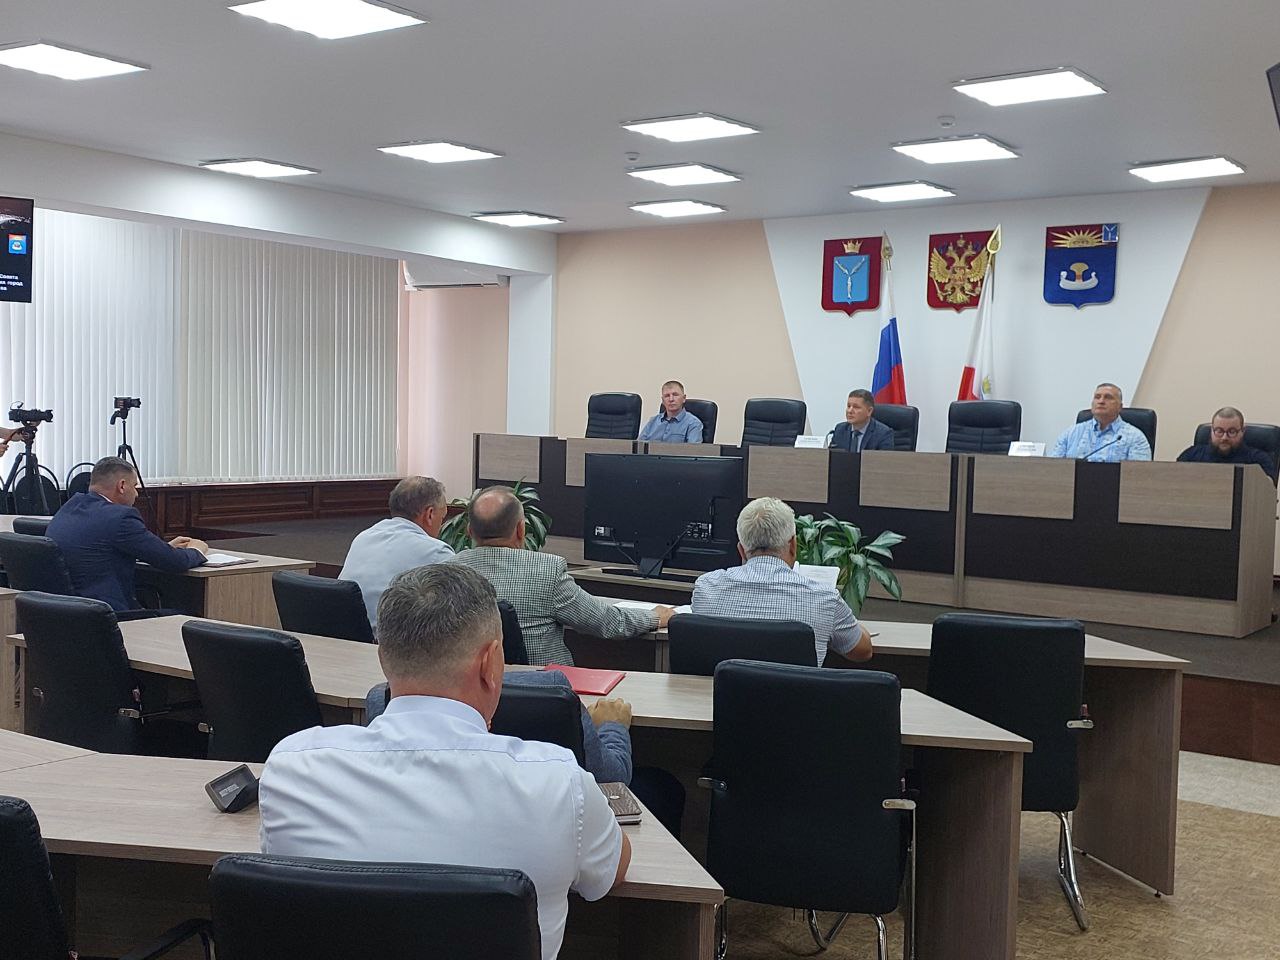 25 июля состоялось очередное заседание комитета и одиннадцатое заседание Совета муниципального образования город Балаково